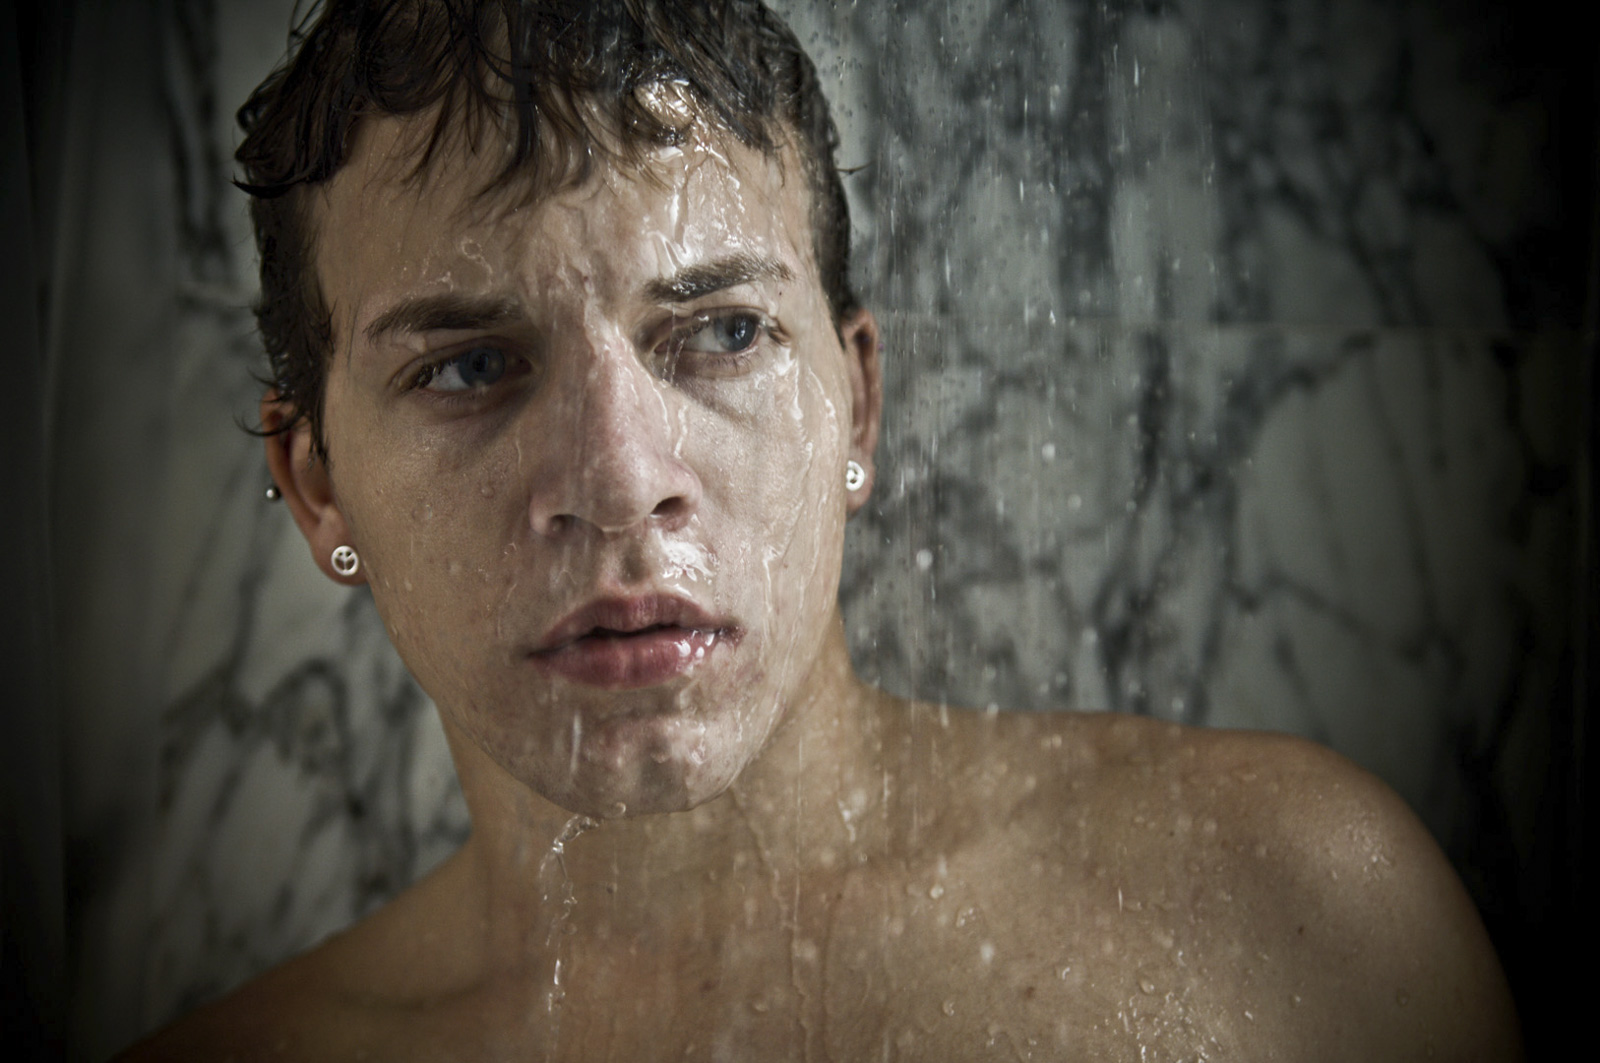 Shower face. Пацаны в душе. Лиц мужчины под душем. Мальчишки в душе. Фото мужчина в душе с лицом.